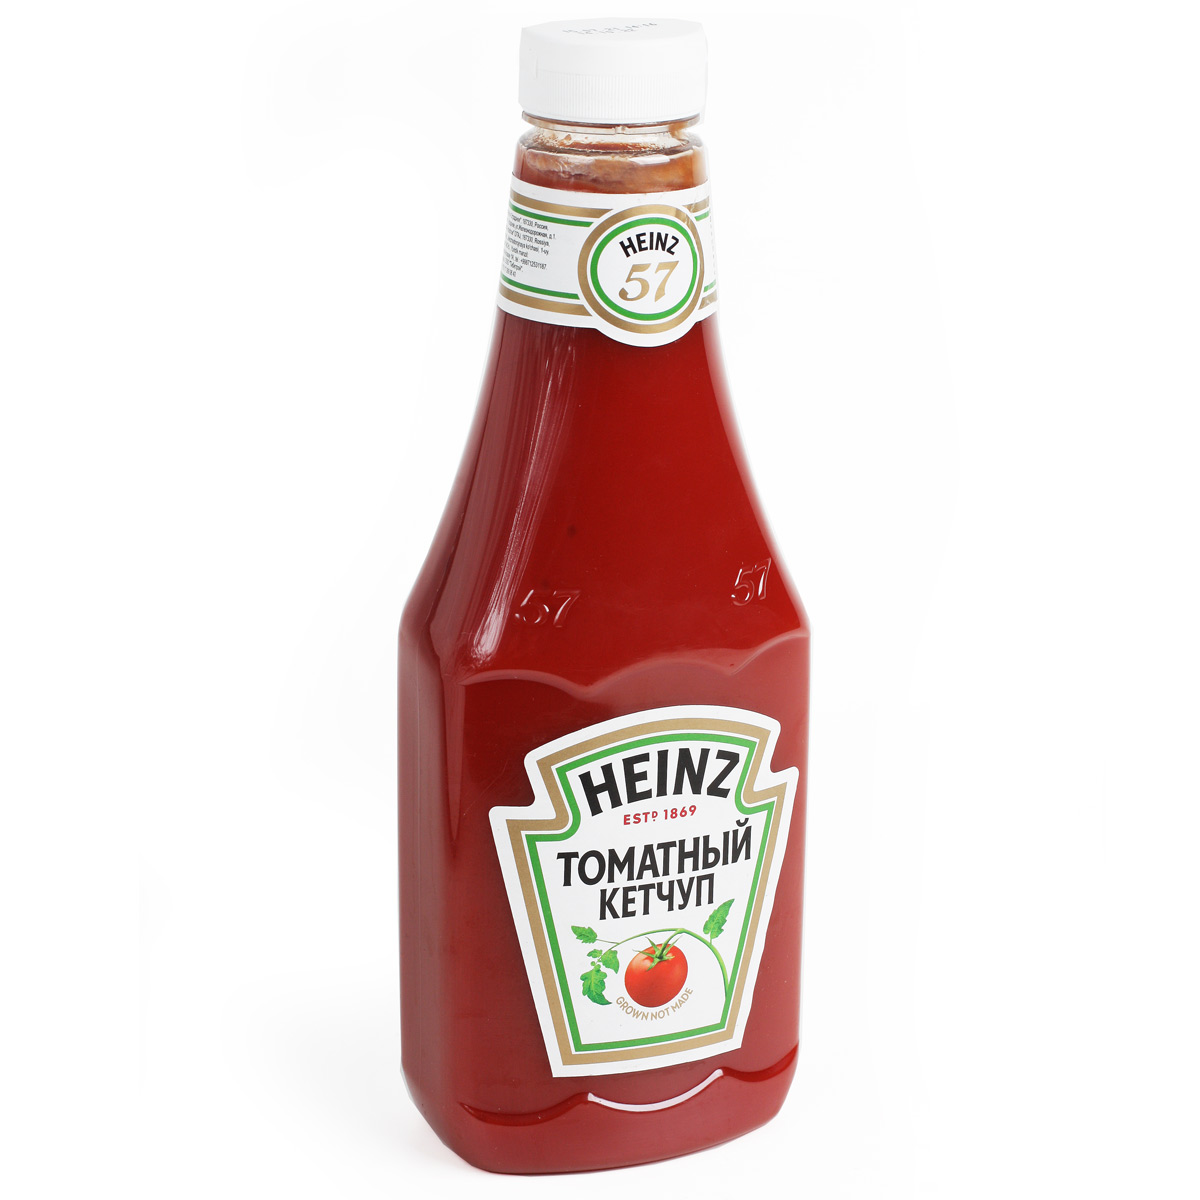 Heinz кетчуп томатный в бутылке 800г